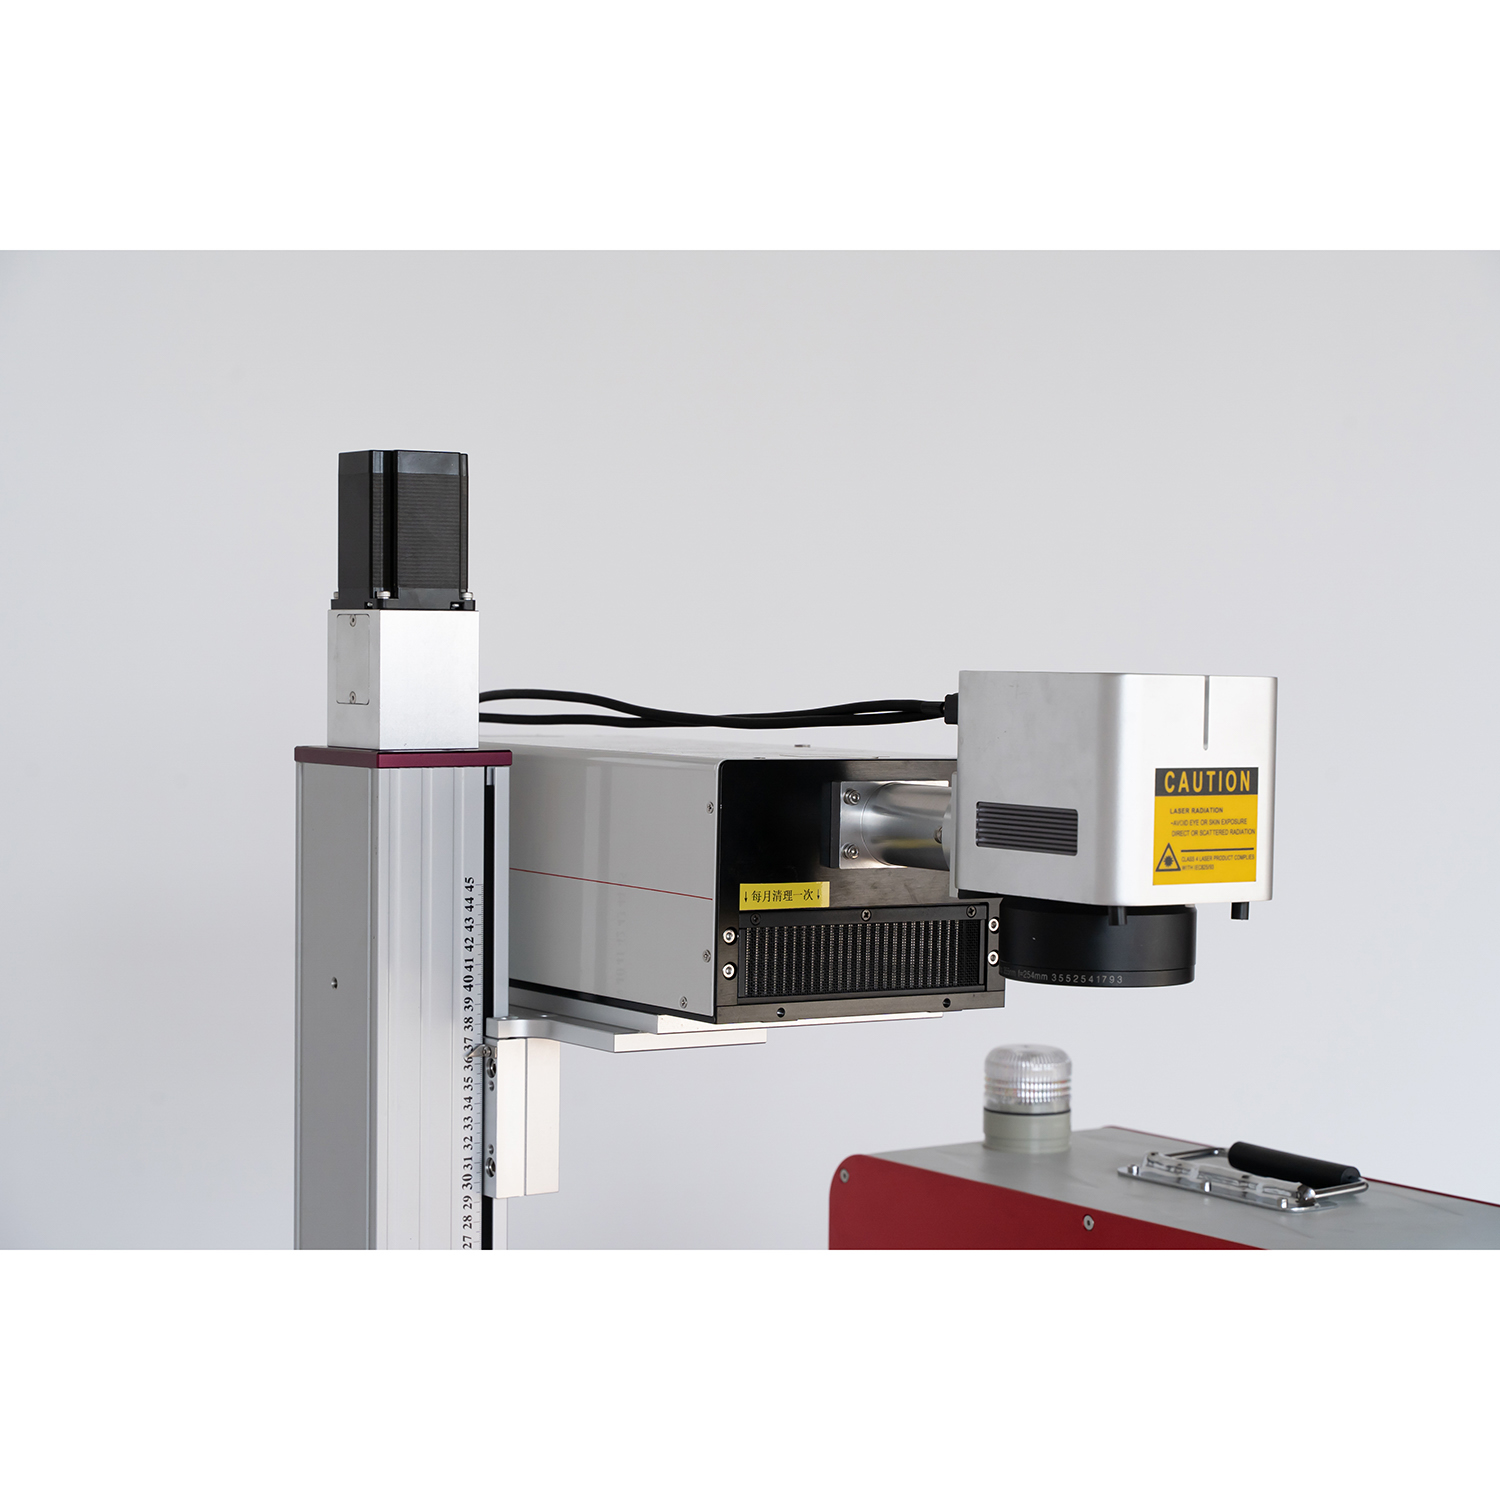 3W 5W 355nm УФ-лазерная маркировочная машина для печатной платы FPC из стекла, керамики, пластика, гравировки